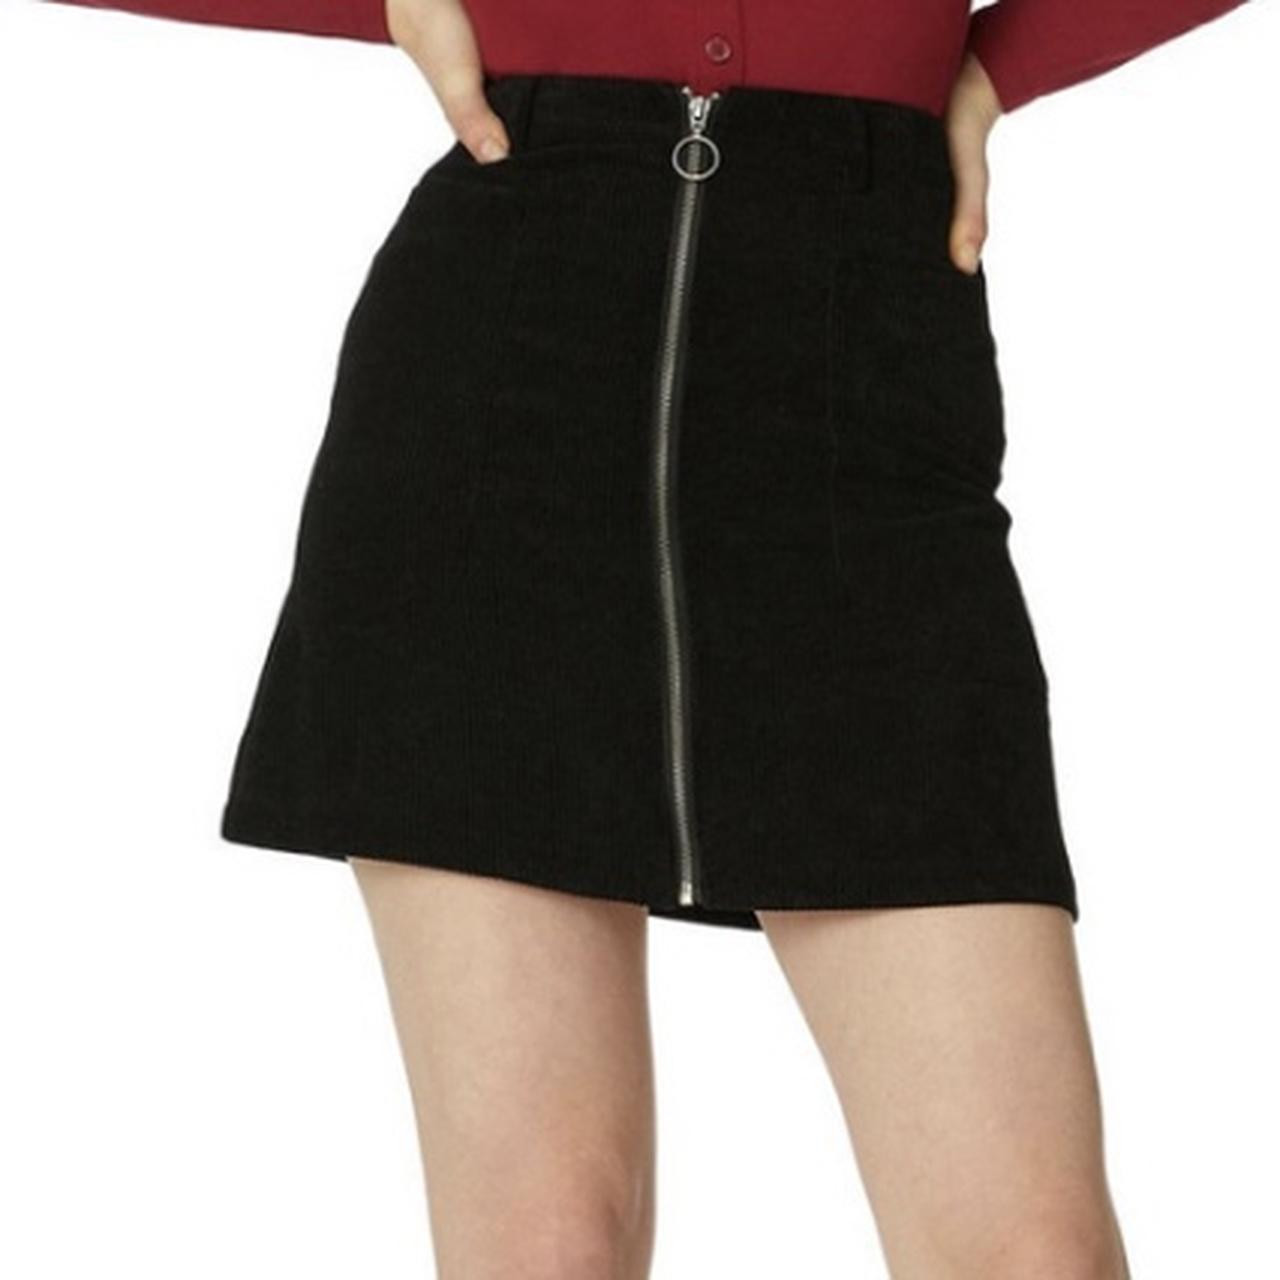 Reservoir Skirt Brand - Dangerfield Size - Size... - Depop